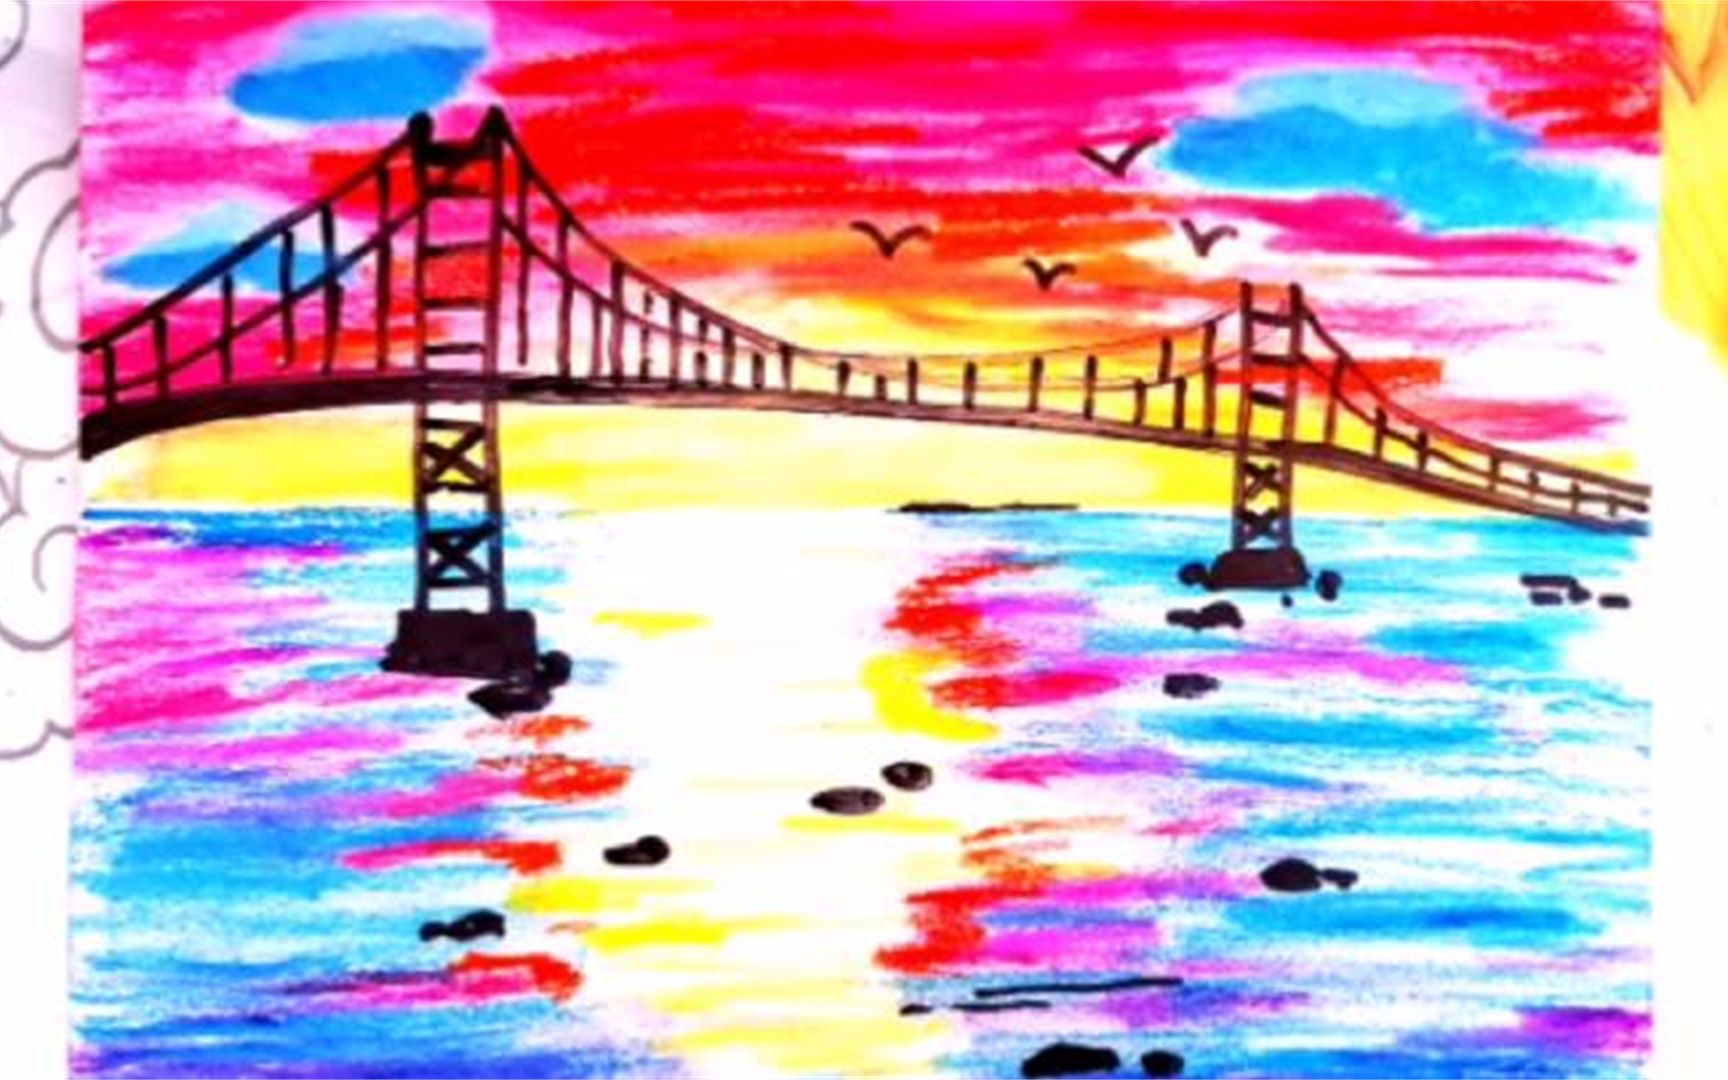 海珠桥儿童画图片